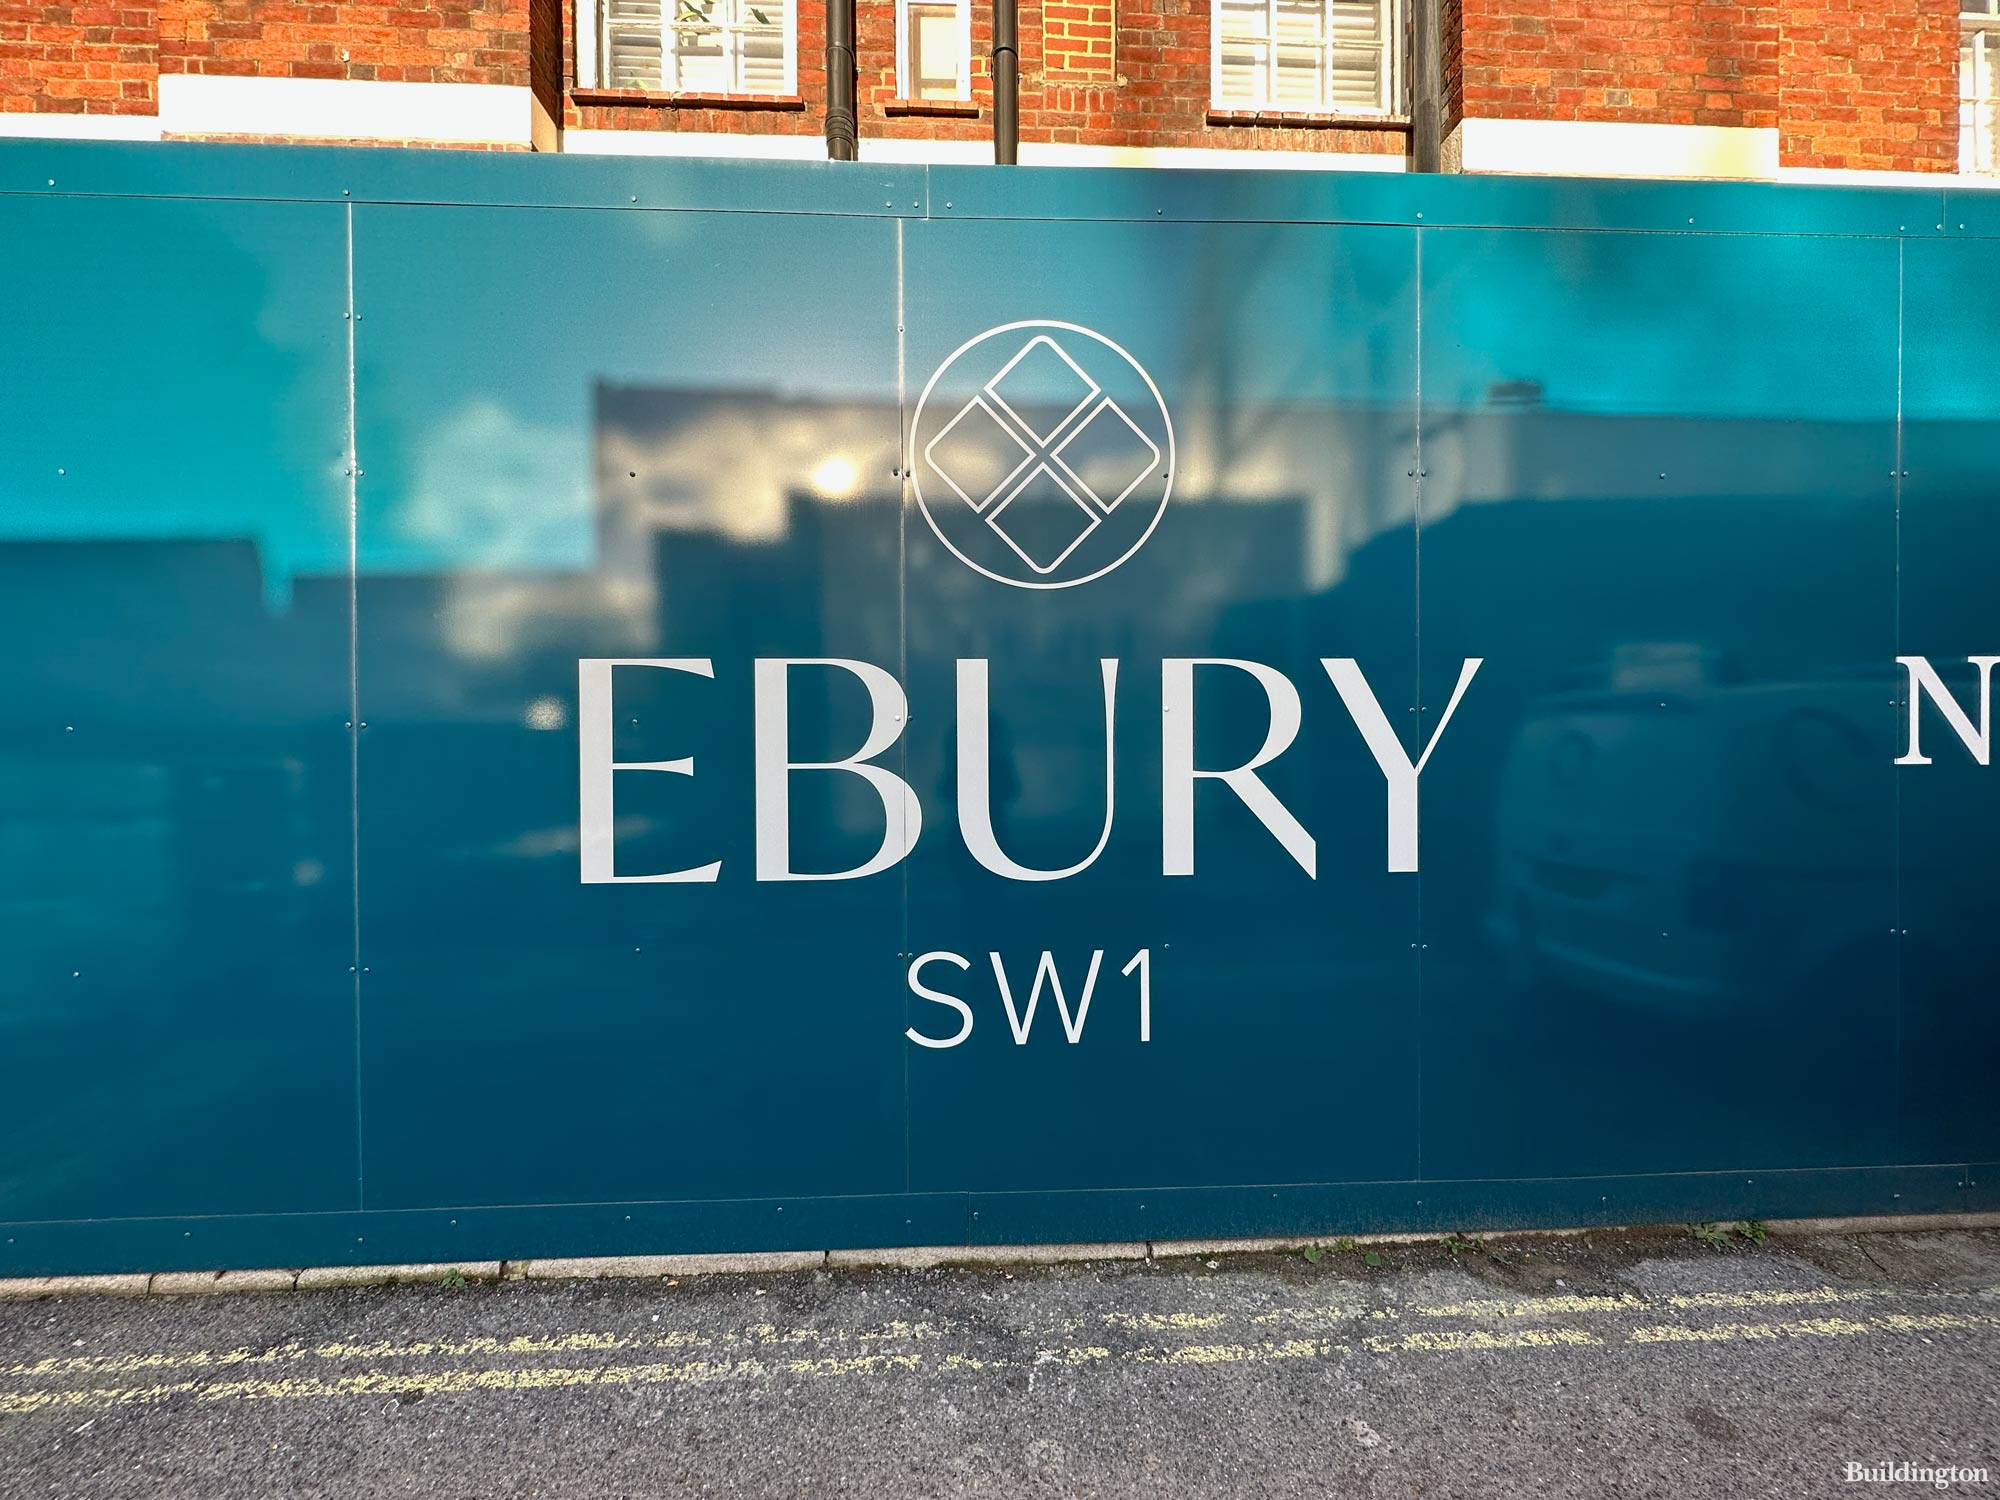 Ebury SW1 development hoarding in December 2023